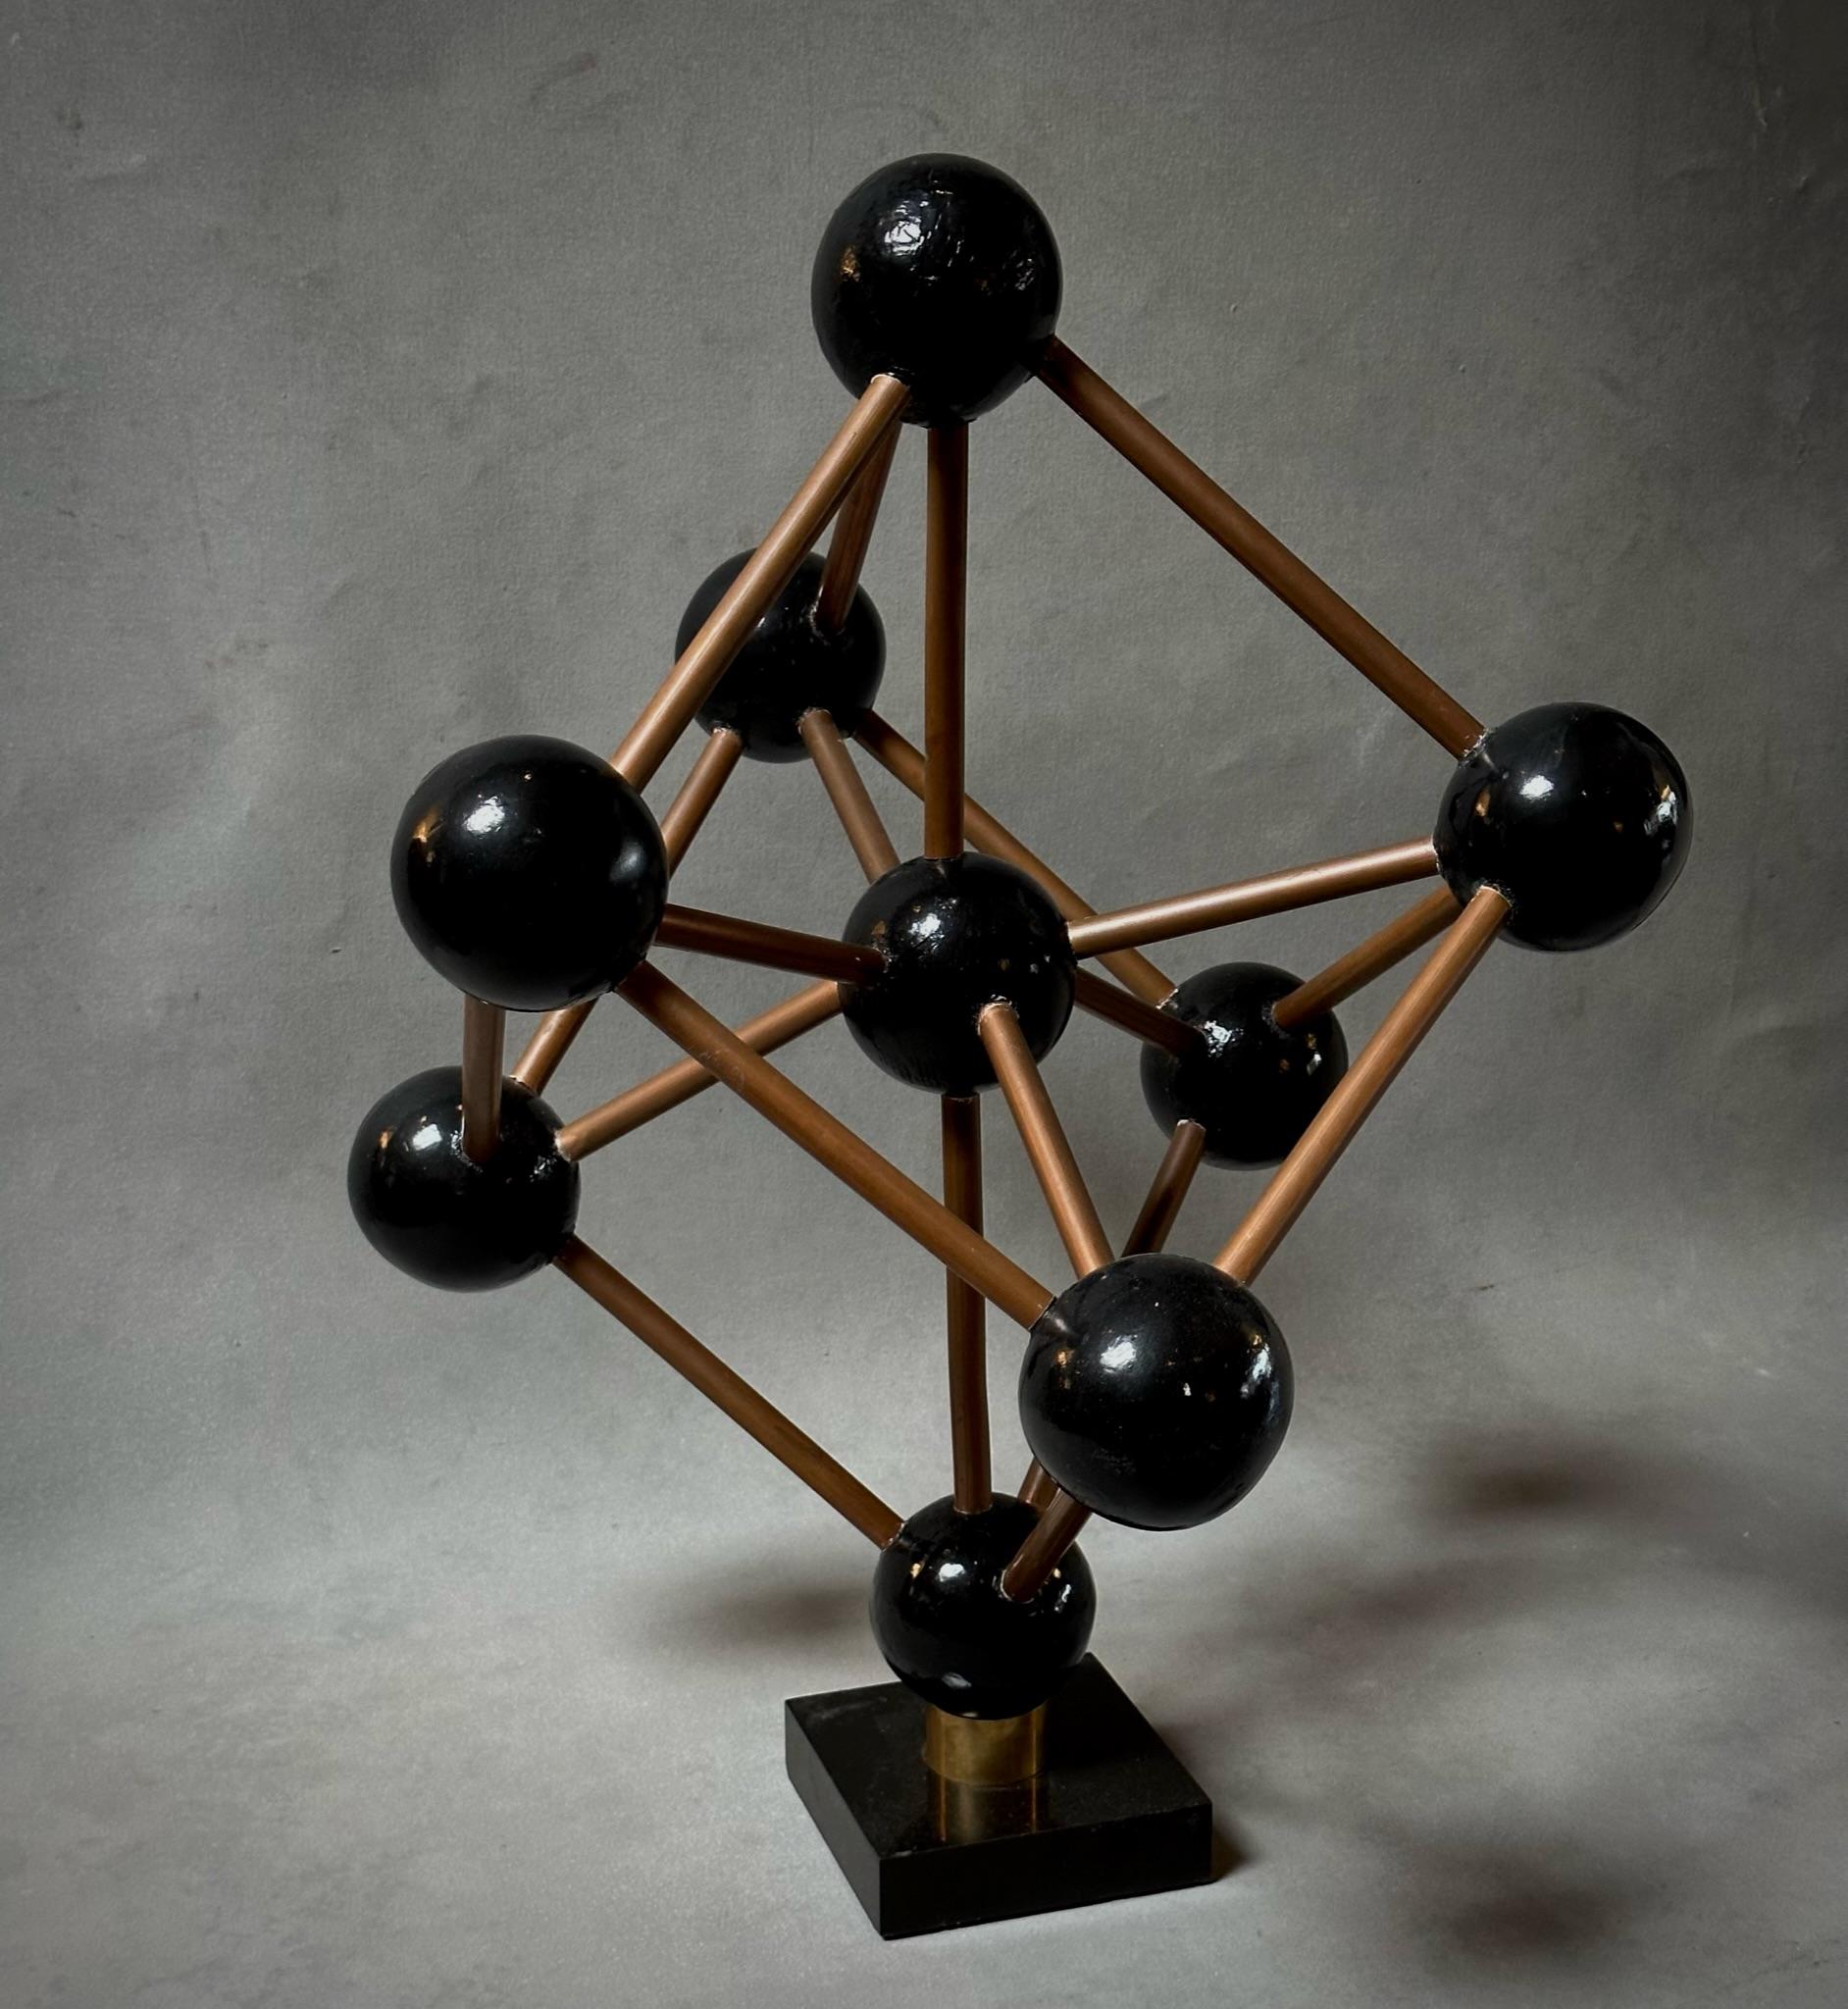 Belgisches geometrisches Modell aus der Mitte des Jahrhunderts mit Kugeln aus ebonisiertem Holz, die mit Metallstäben in einem grafischen, modularen Muster verbunden sind, montiert auf einem schwarzen Marmorsockel. Ein einzigartiger skulpturaler